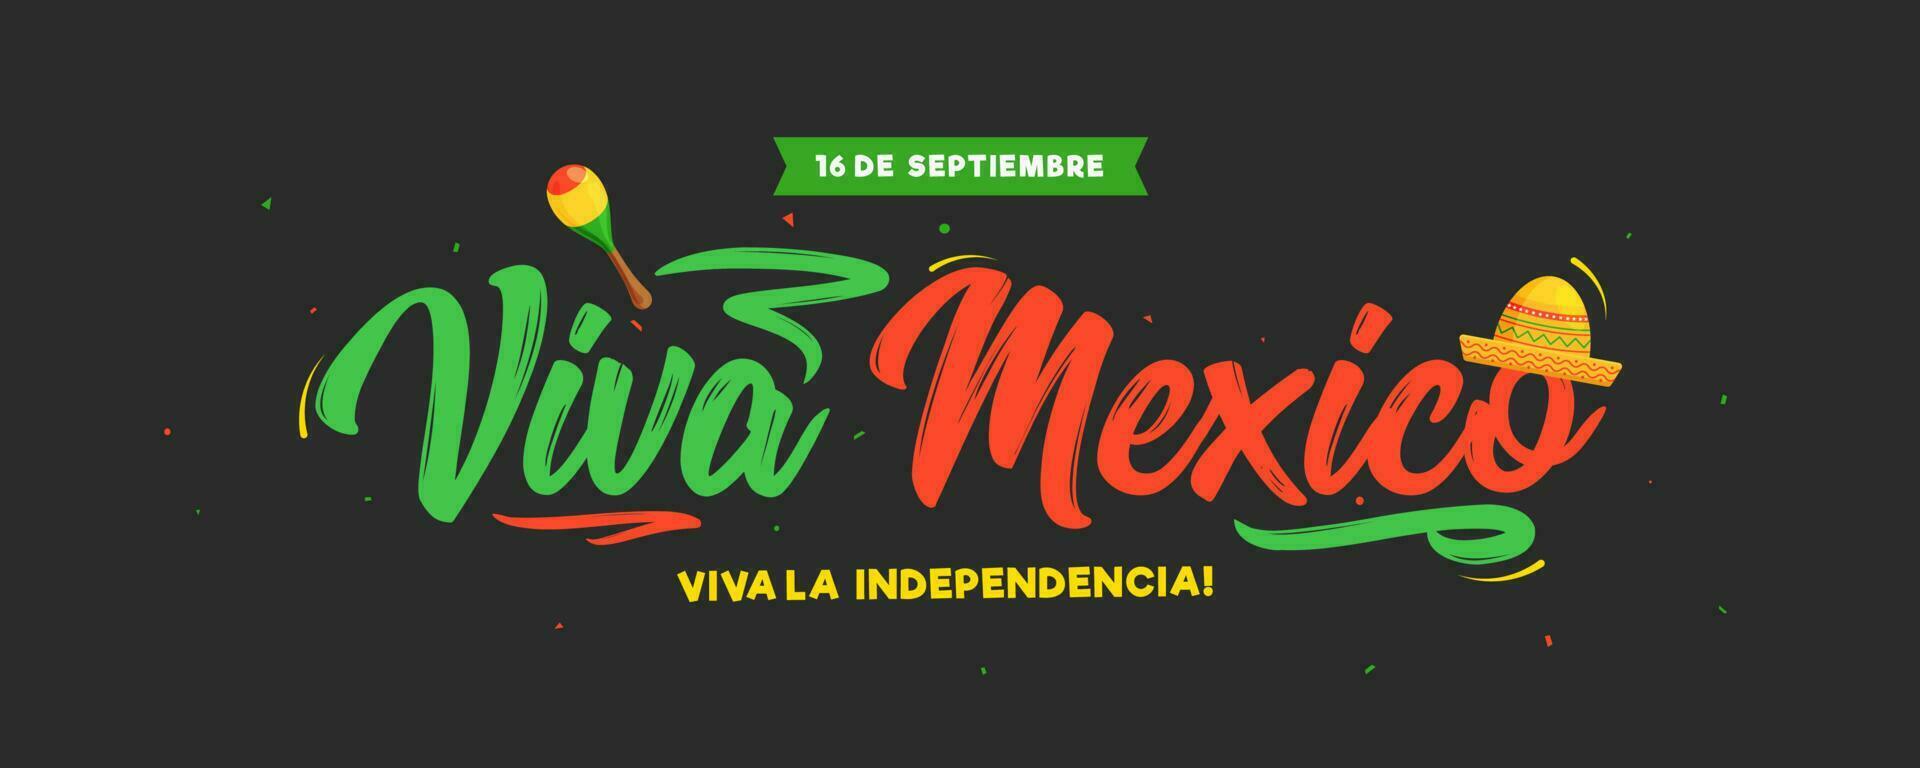 16 september viva mexico oberoende dag text i spanska språk med sombrero hatt och maracas illustration på svart bakgrund. kan vara Begagnade som rubrik eller baner design. vektor